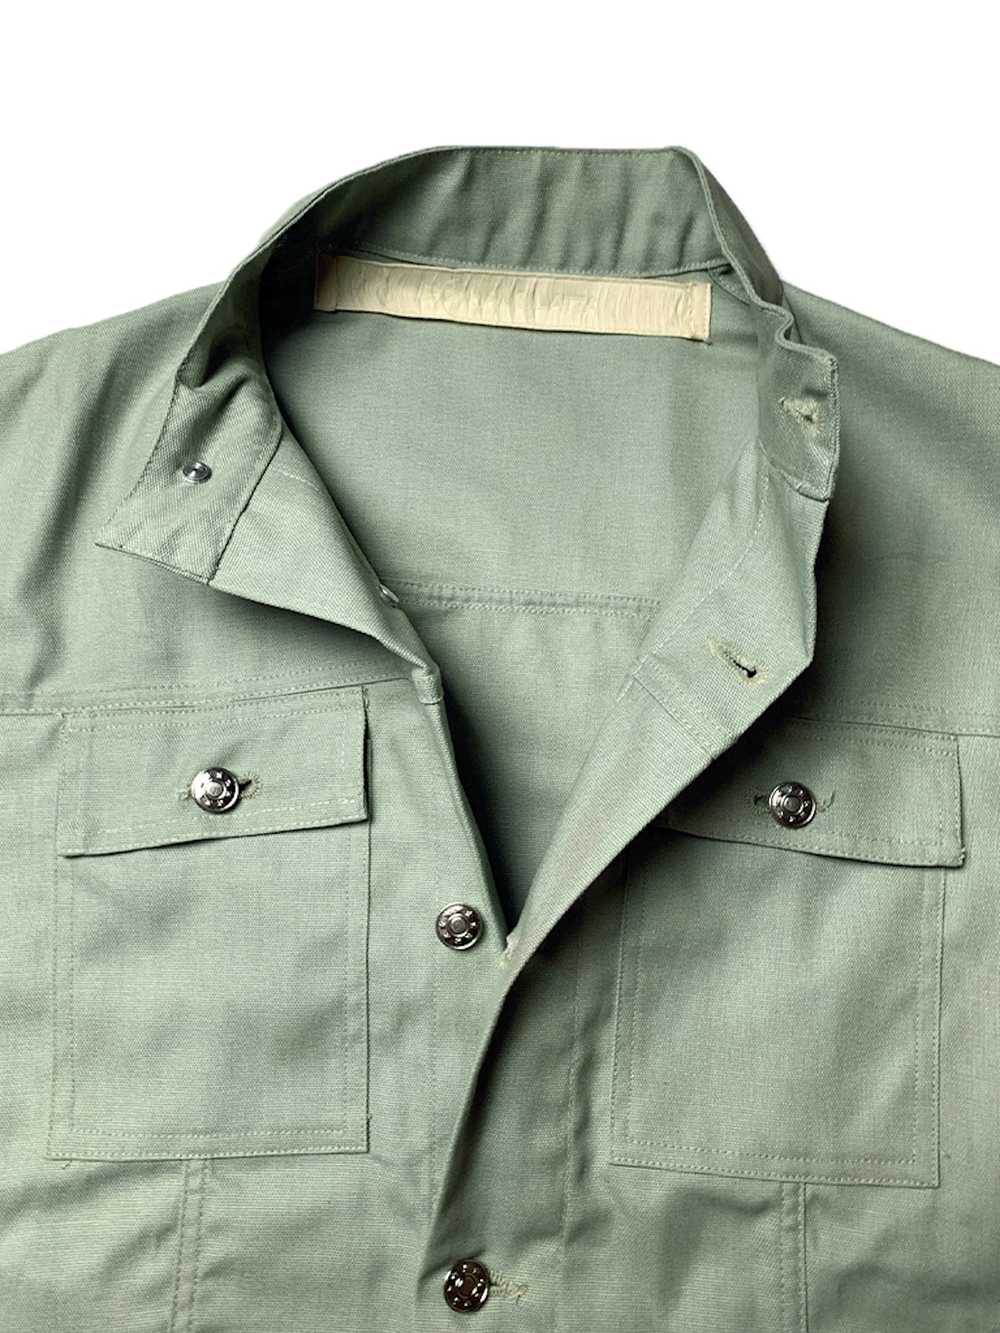 Eckhaus Latta Sage Green Military Shirt Jacket - image 3